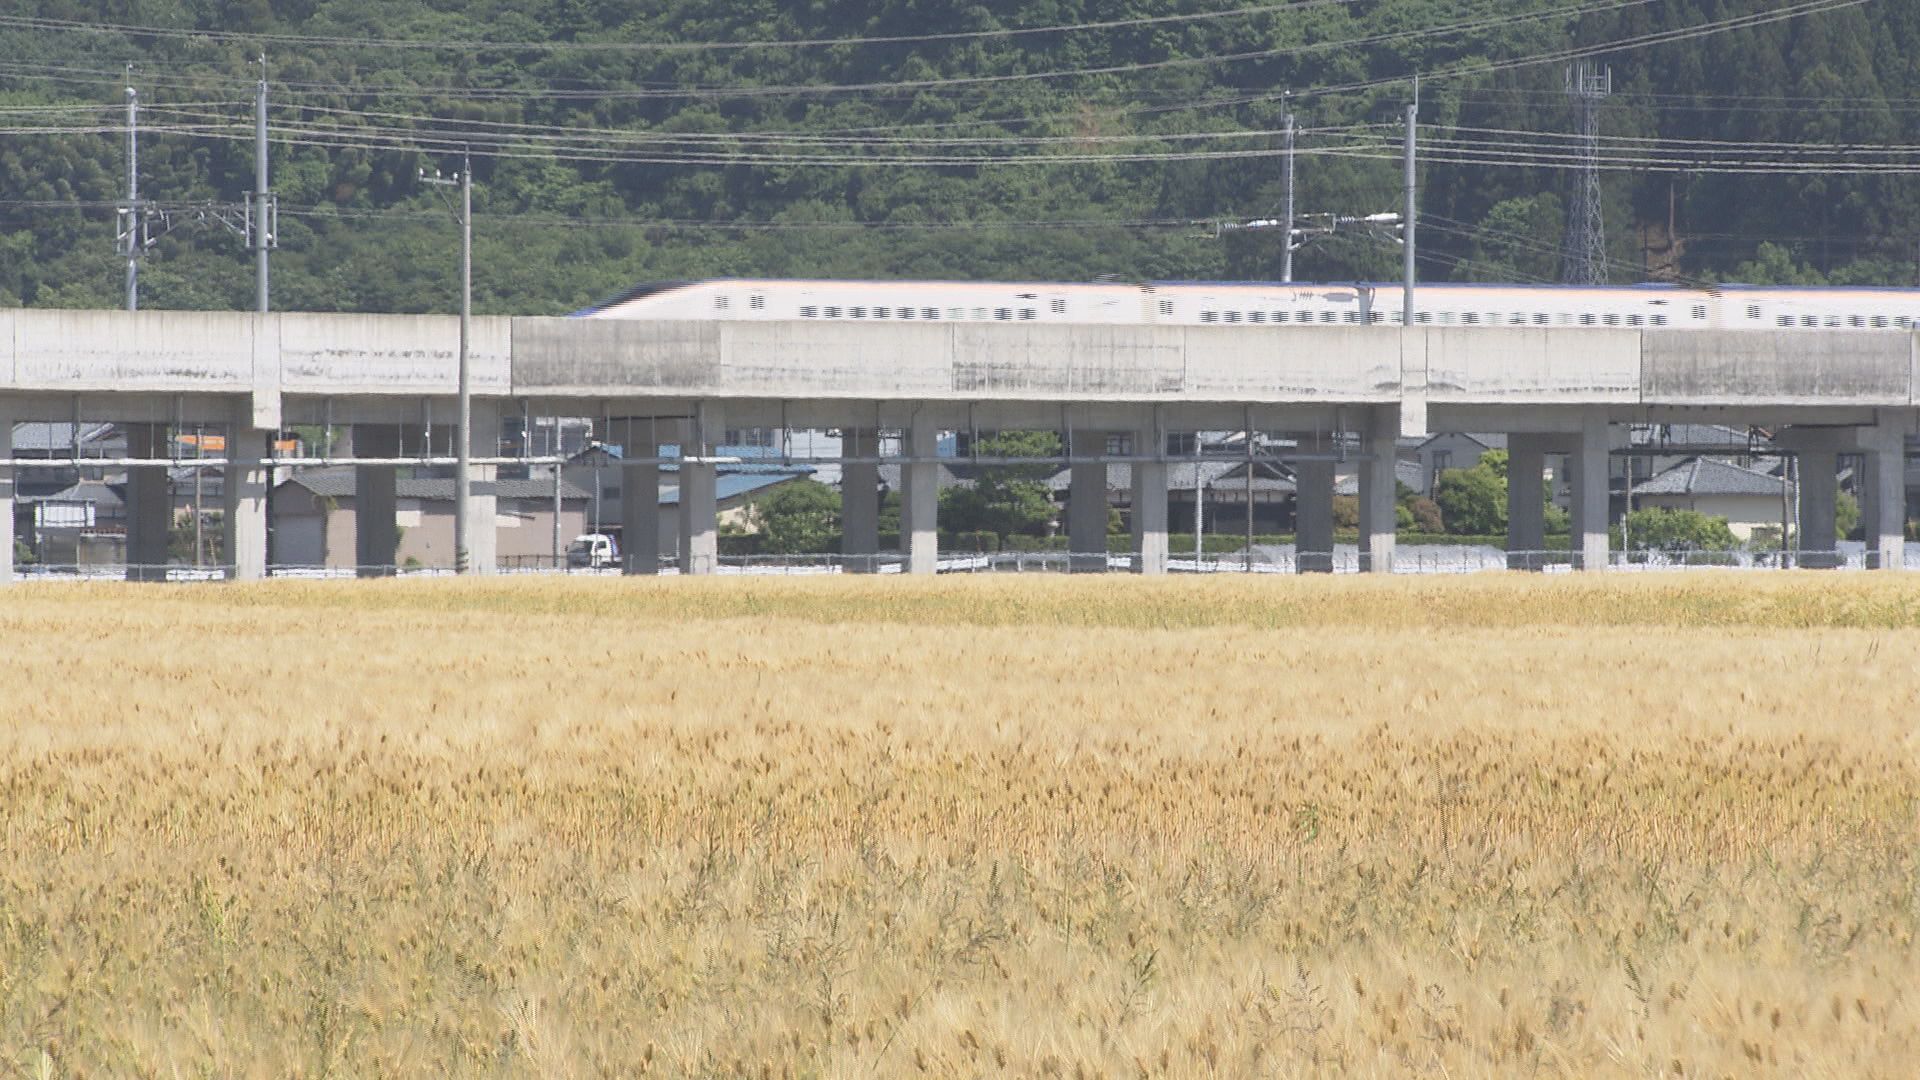 黄金色に輝く大麦が新幹線乗客を出迎える 越前たけふ駅前盛り上げへ 生産者が協力して栽培